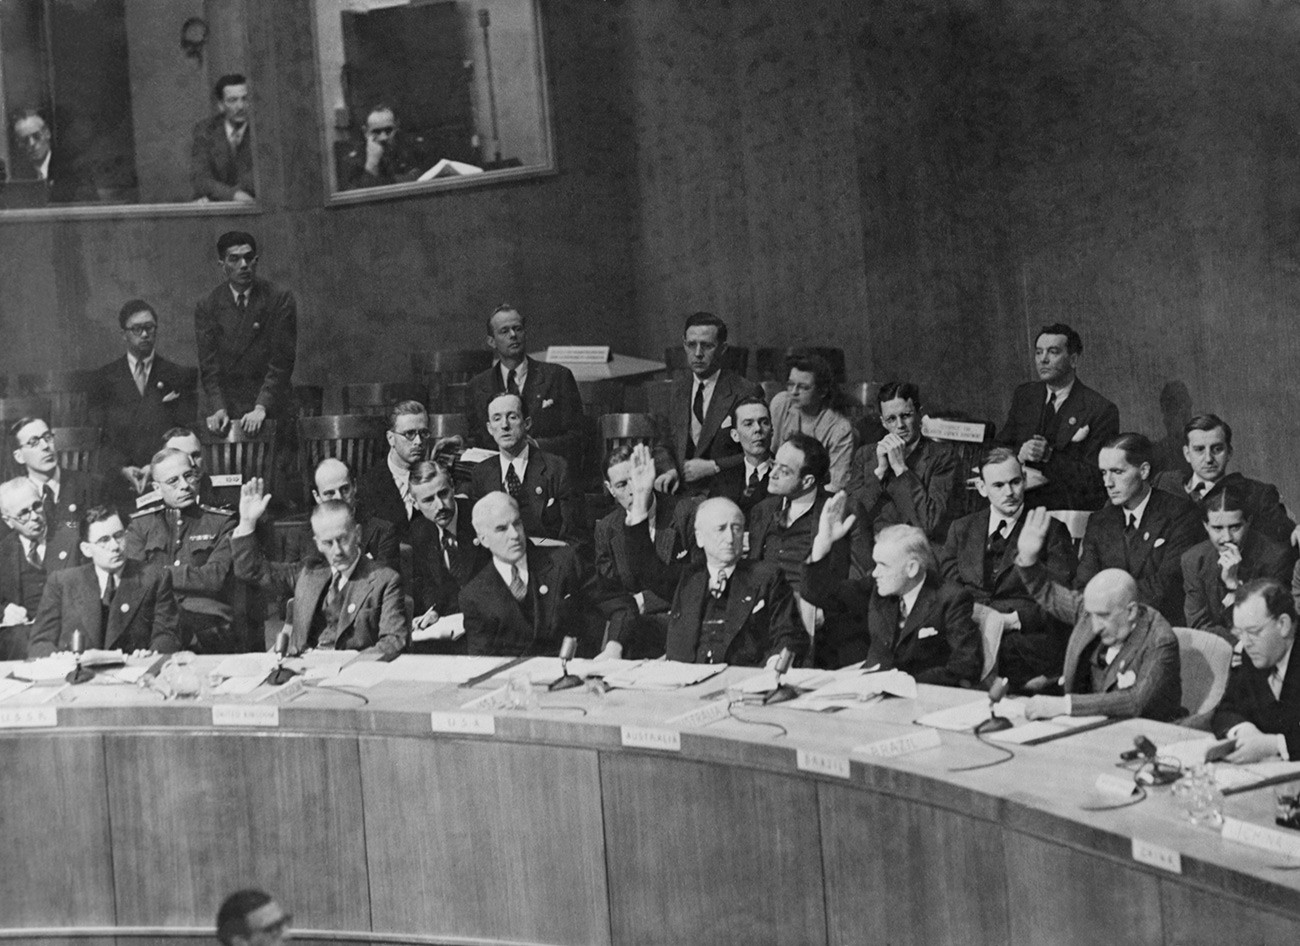 Vijeće sigurnosti UN-a glasa za nastavak diskusije o pregovorima između Irana i Sovjetskog Saveza oko Azerbajdžana poslije zahtjeva SSSR-a da se taj spor okarakterizira kao riješen.